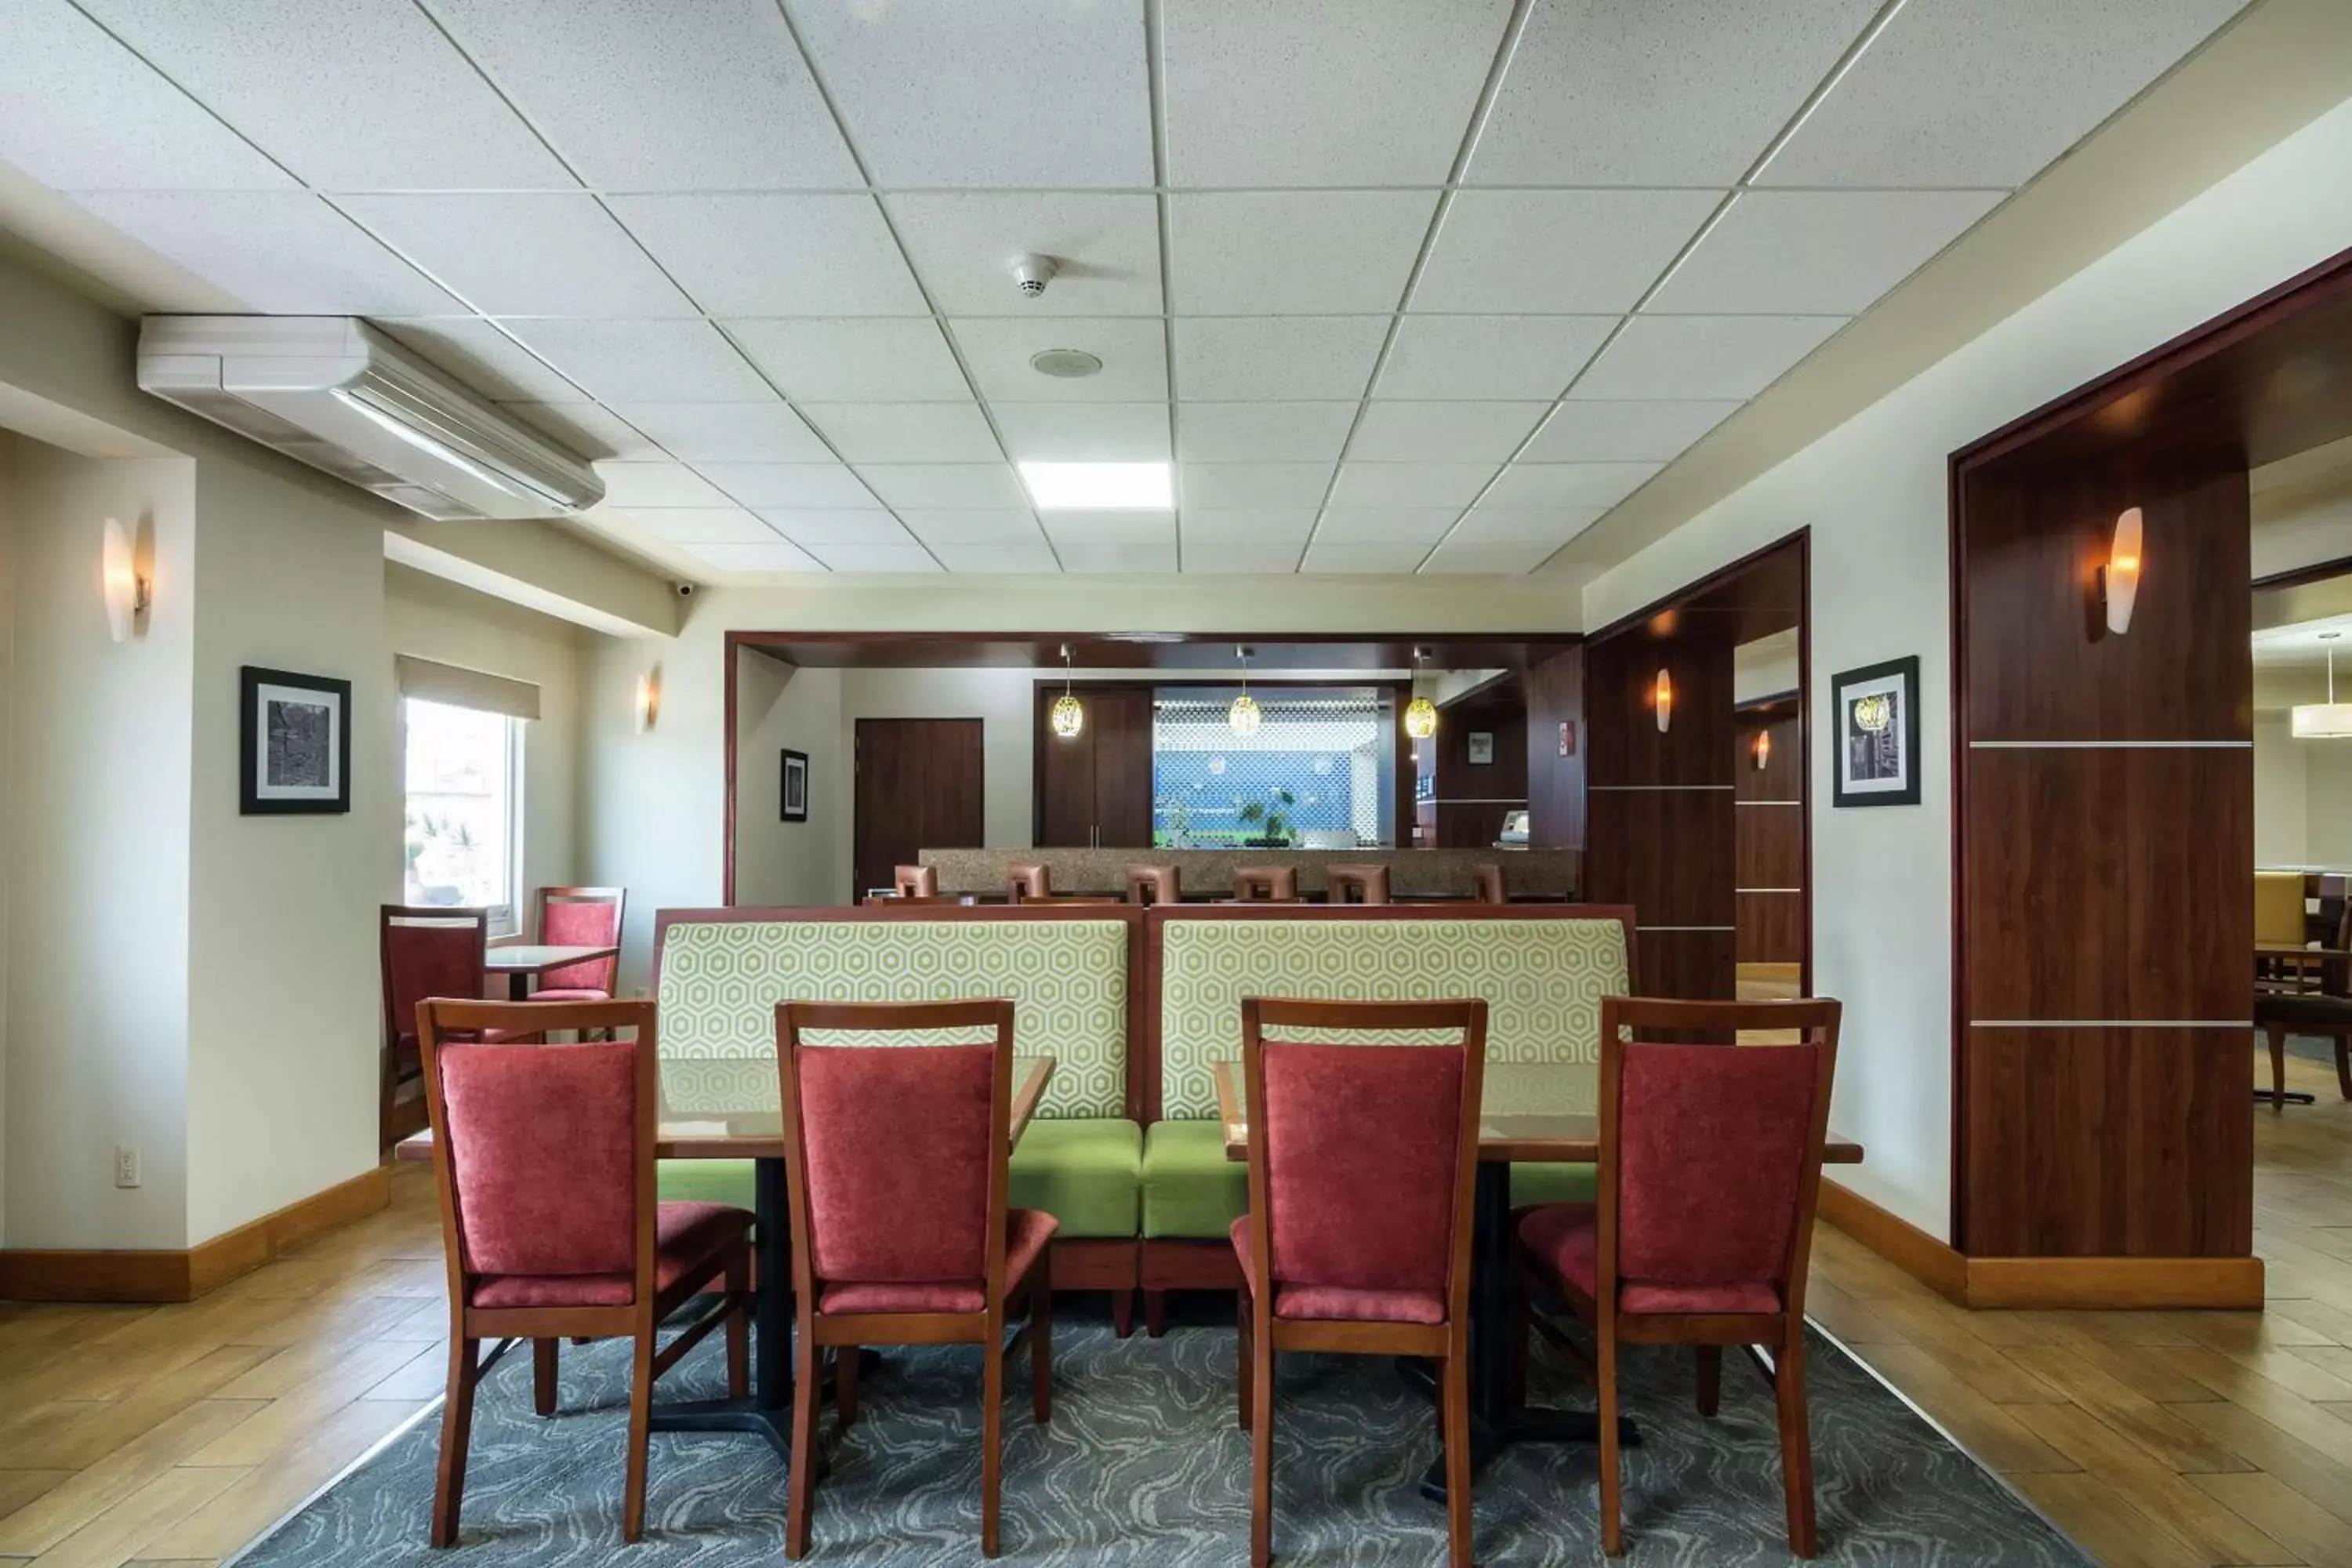 Lobby or reception in Hampton by Hilton San Juan del Rio